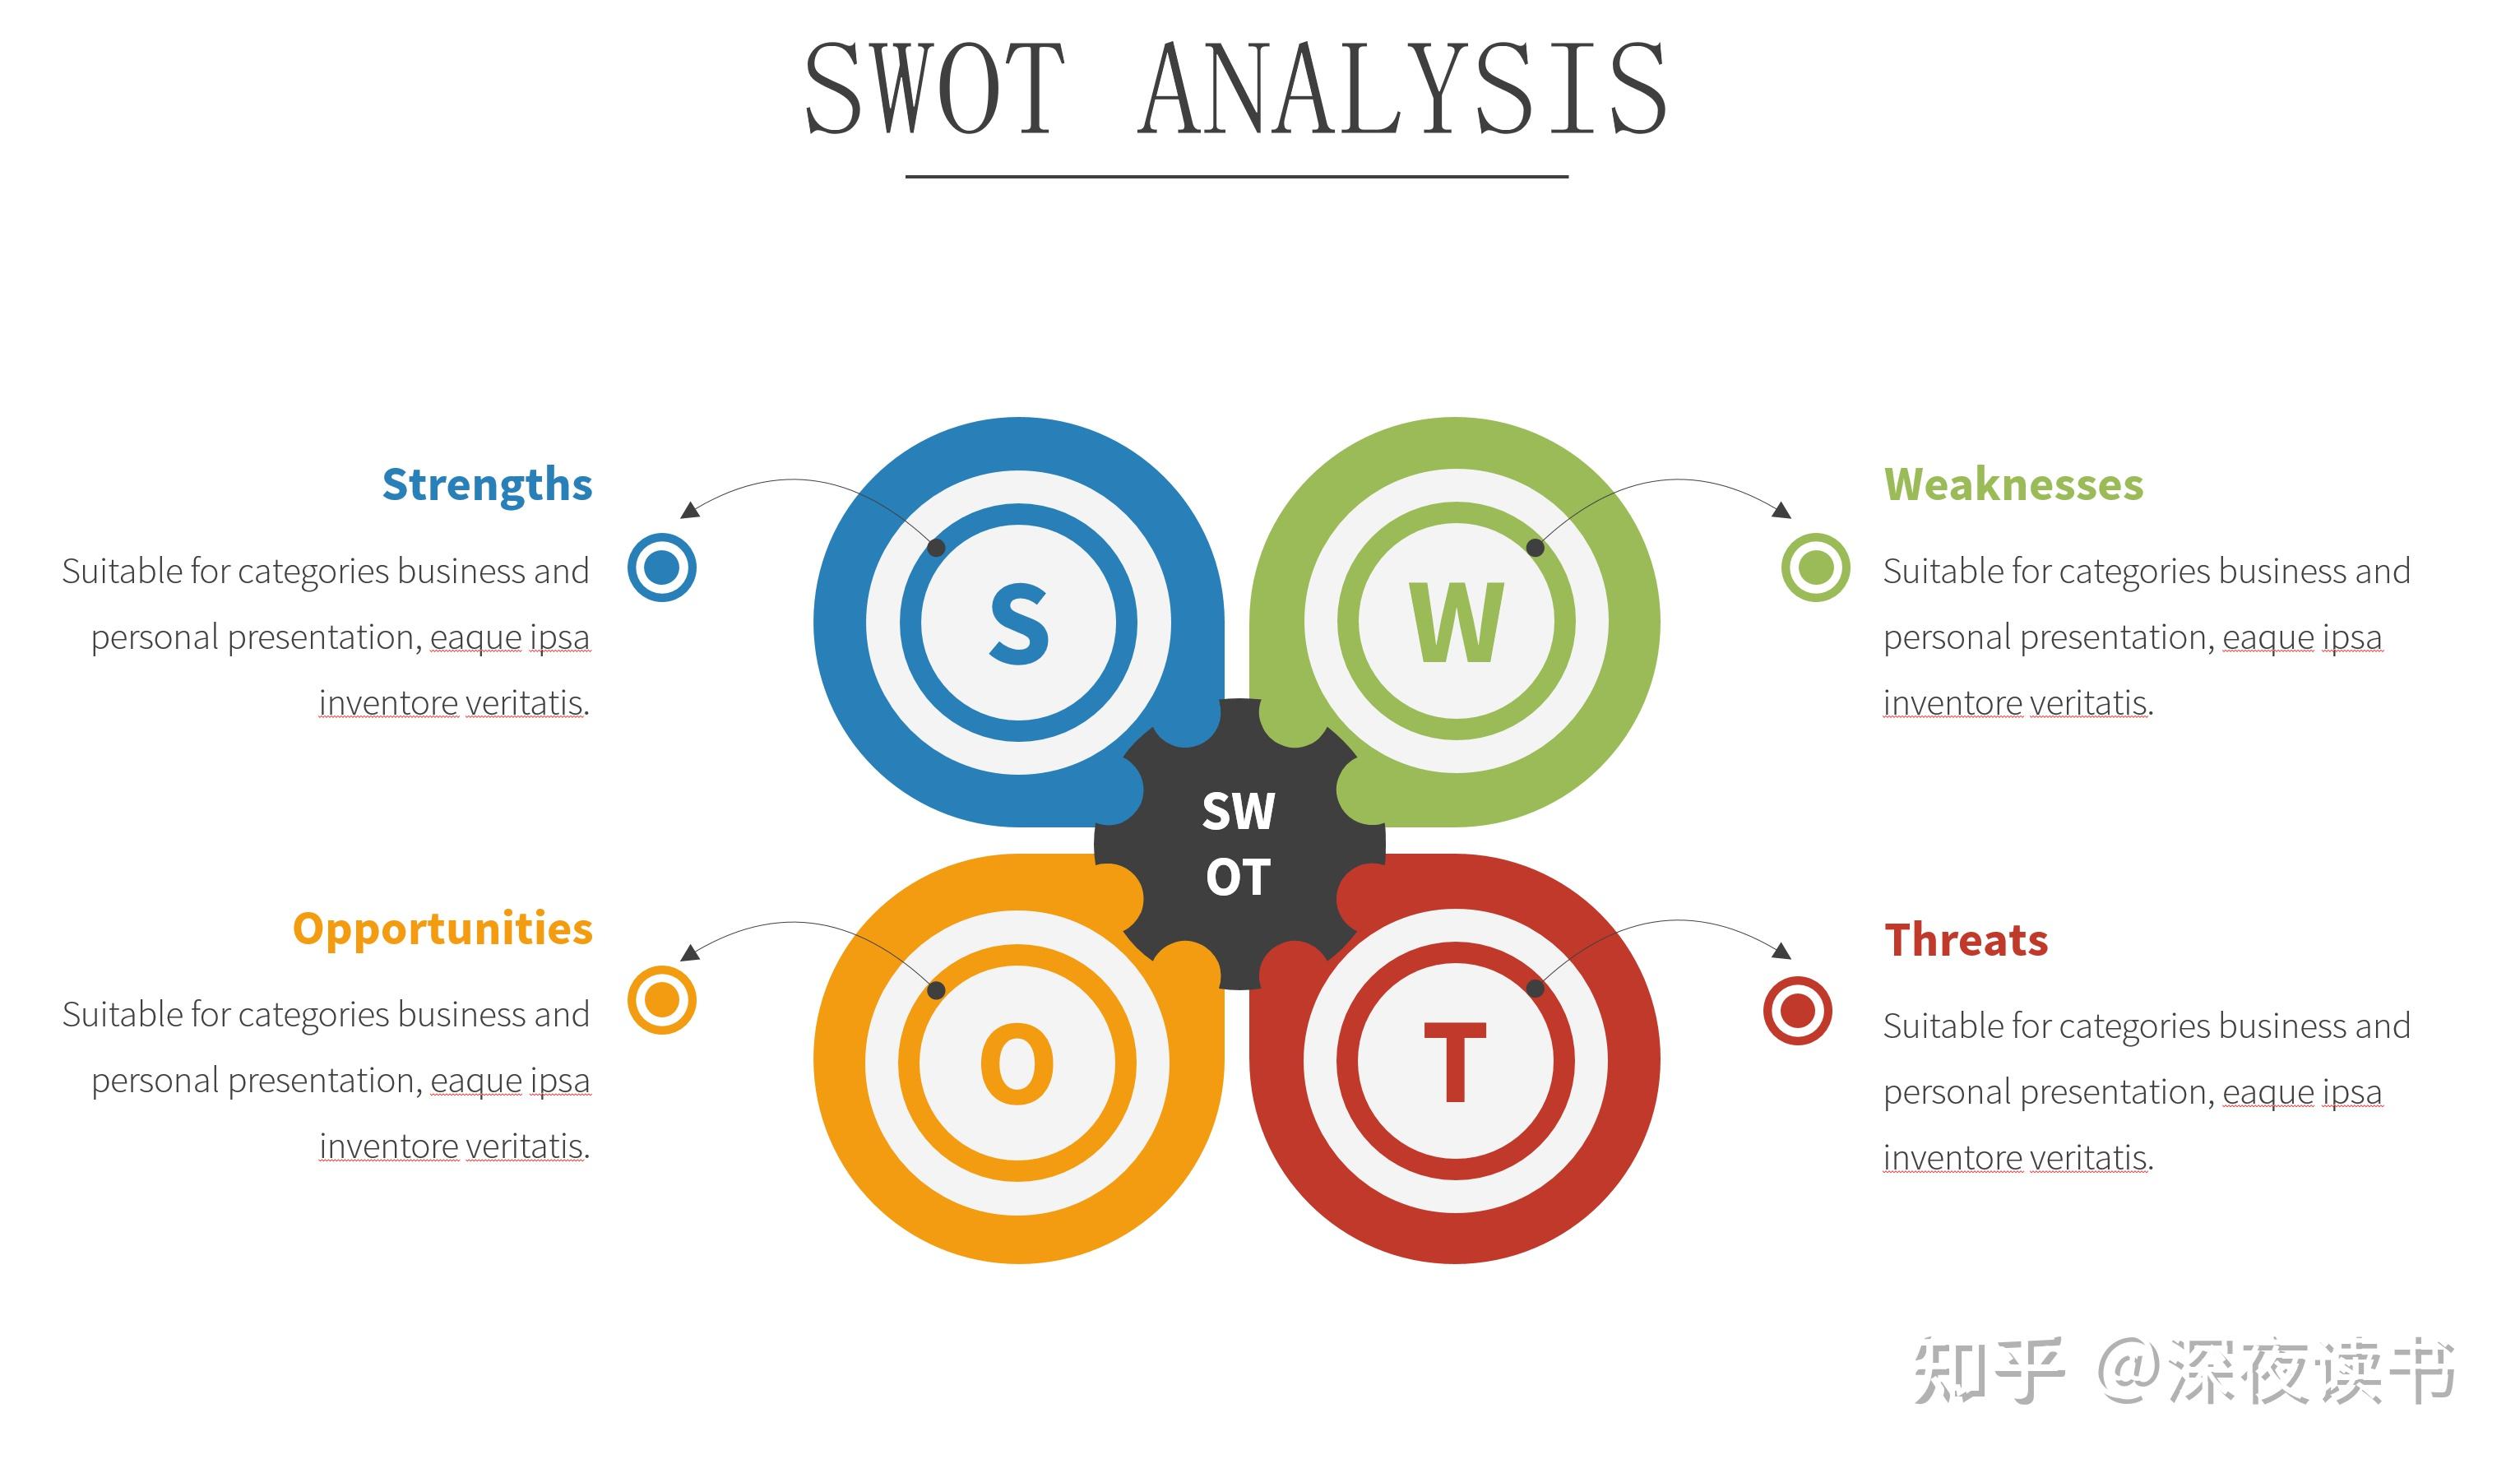 一,swot分析法:特此提供职场中常用的7大分析工具,提升你的工作效能